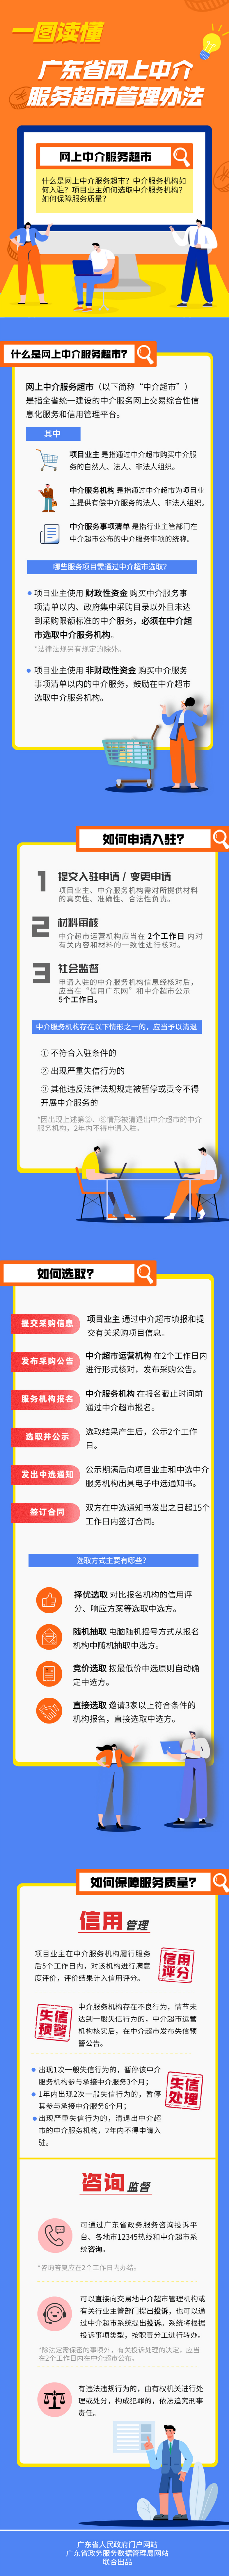 一图读懂广东省网上中介服务超市管理办法.jpg